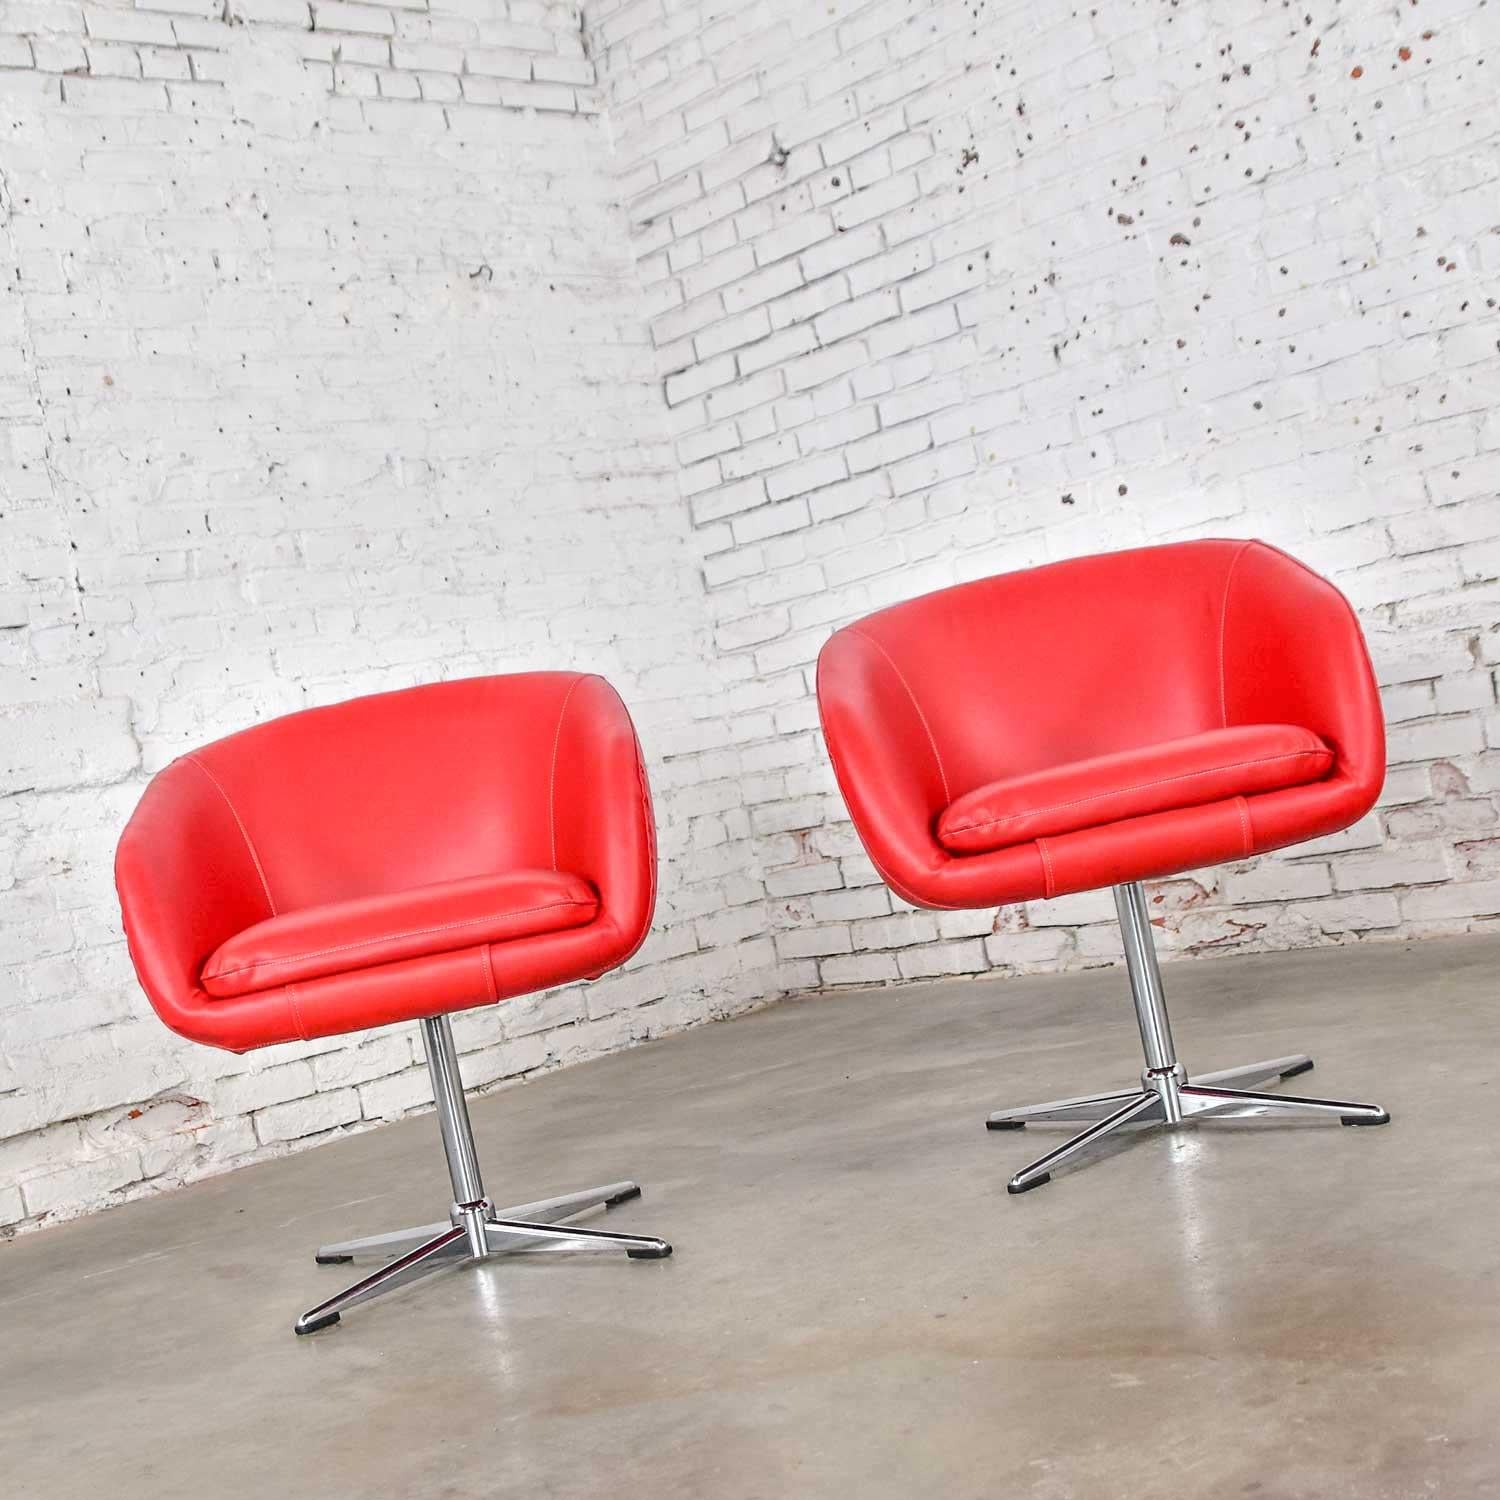 Superbe paire de chaises baquet pivotantes Shelby Williams, de style moderne du milieu du siècle, avec base en X chromée. Nouvellement recouvert d'un tissu vinyle rouge vif en faux cuir. Dans un bel état vintage. Malheureusement, ils étaient